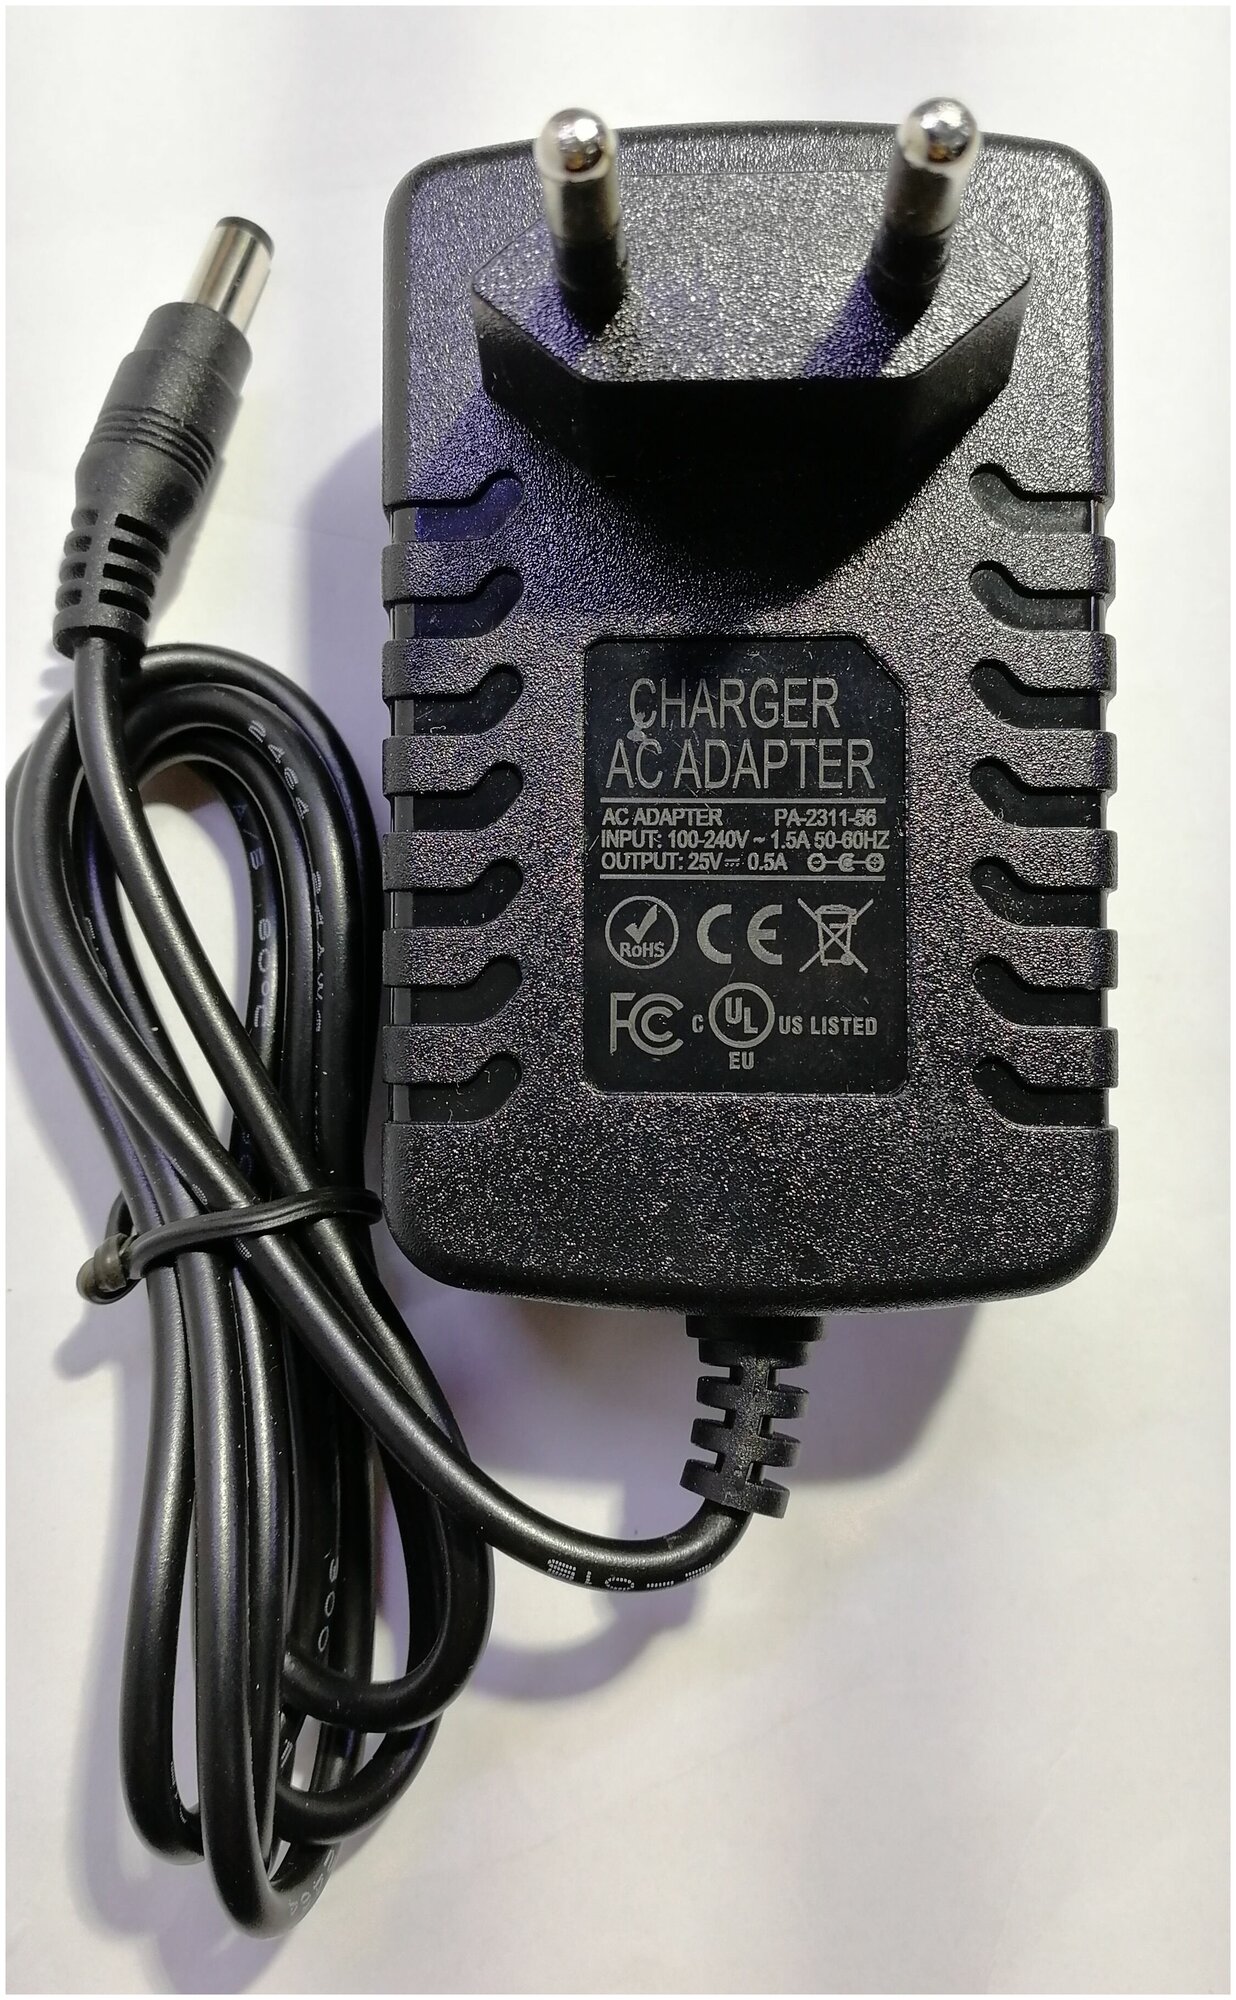 Сетевое зарядное устройство блок питания для аккумуляторных пылесосов Electrolux ergorapido, AEG DC 25v 0.5a - фотография № 3